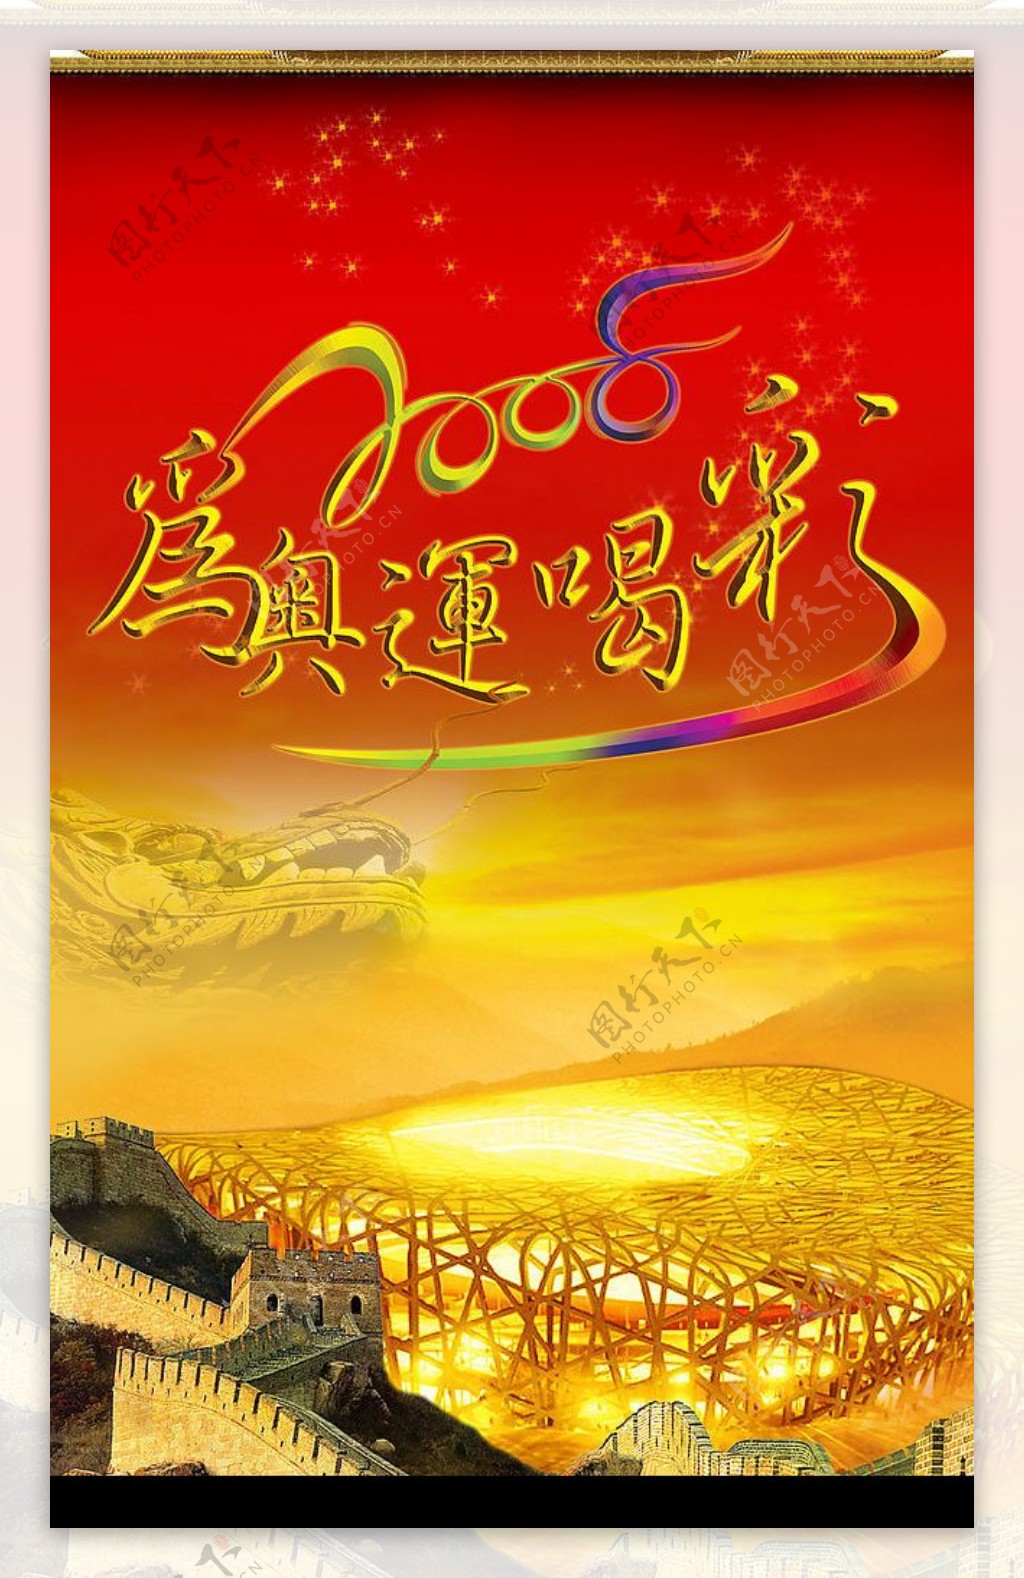 北京奥运模板图片